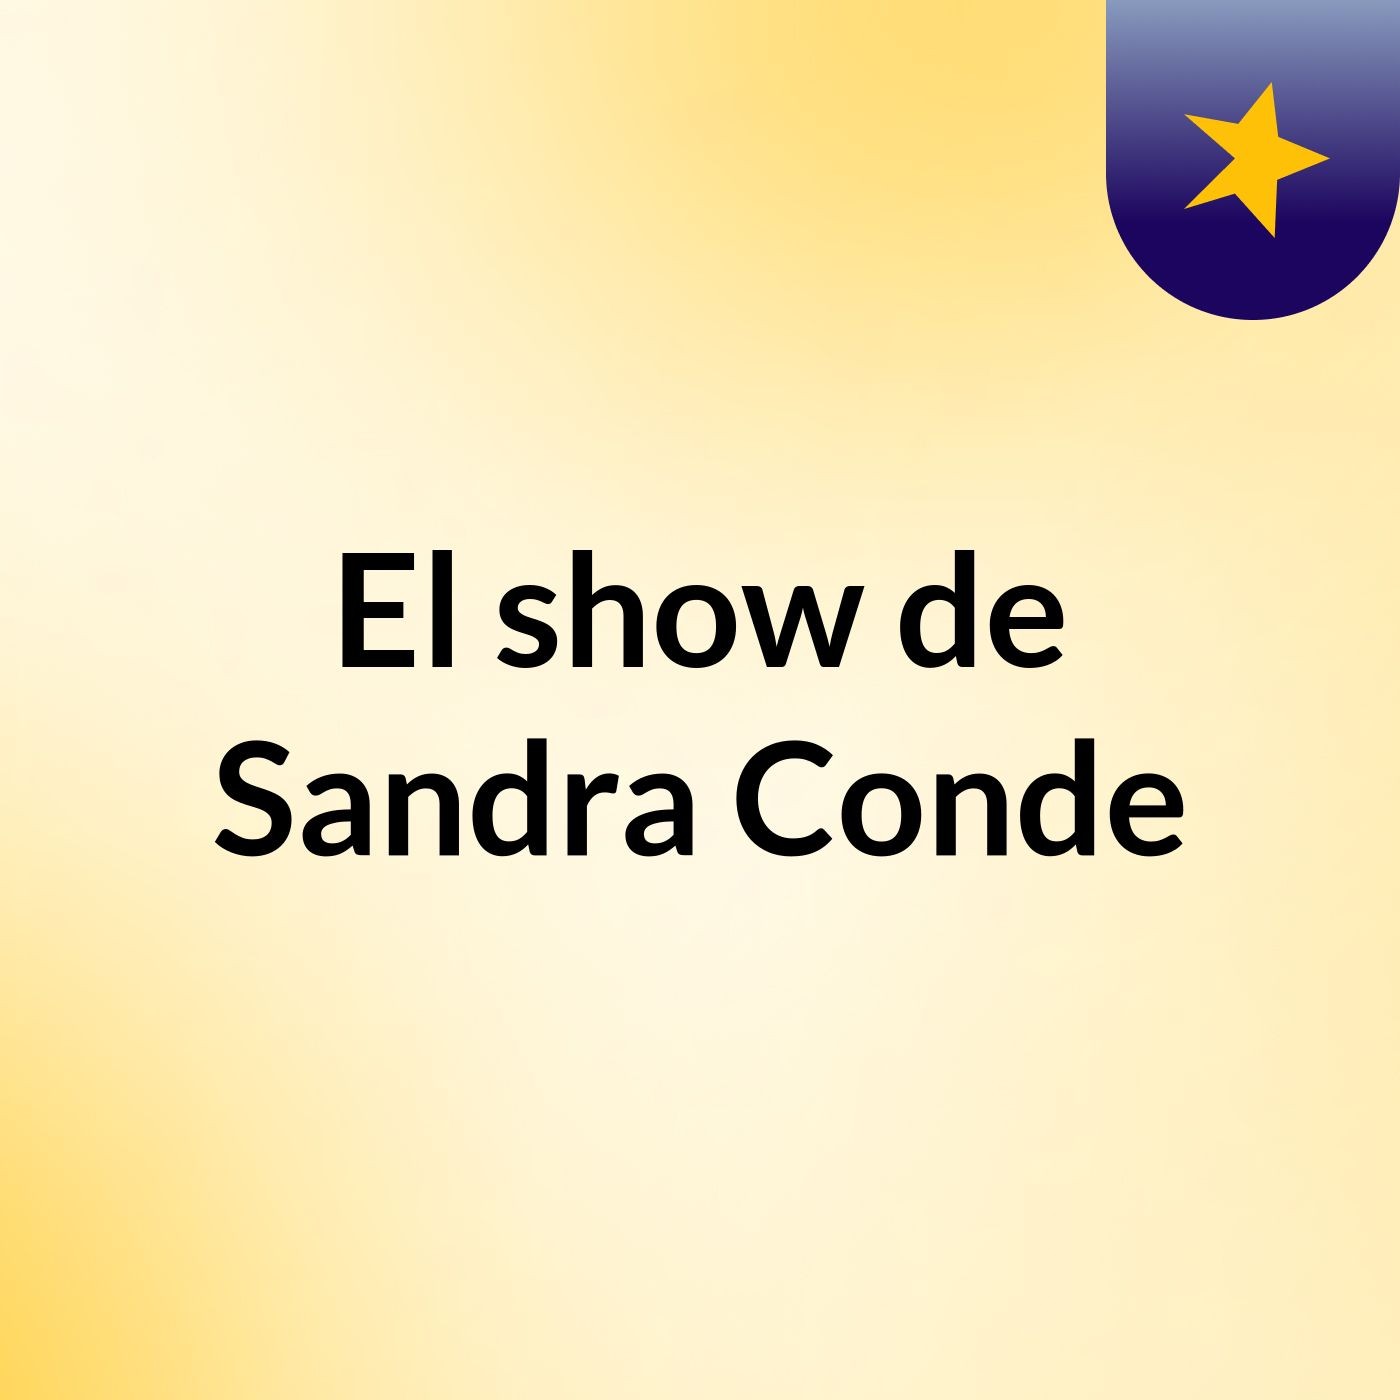 El show de Sandra Conde